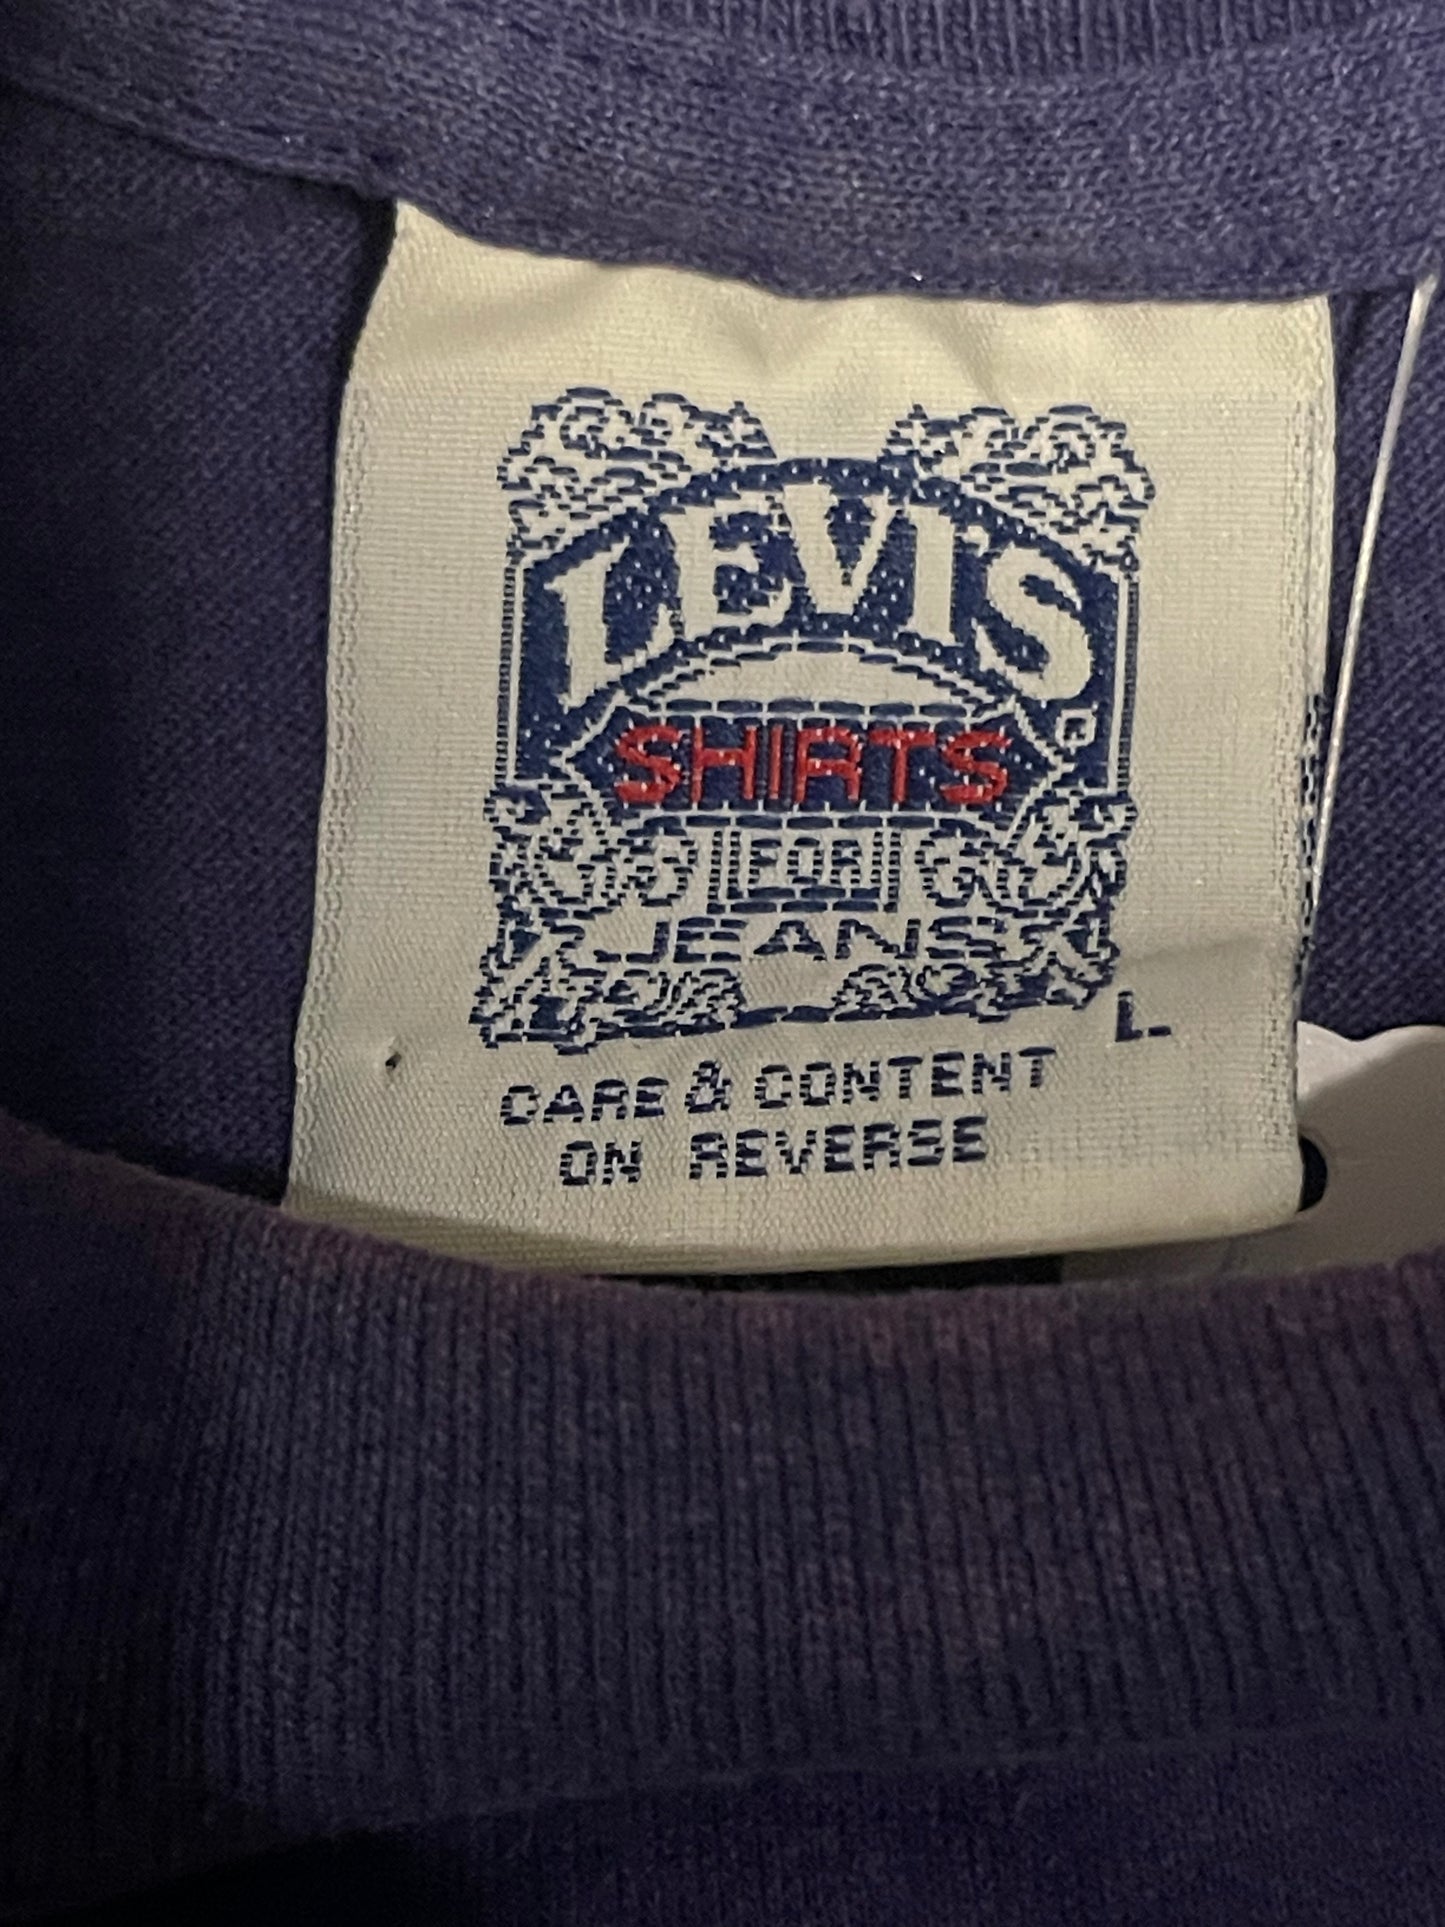 1992 Levi’s Jeans Tee